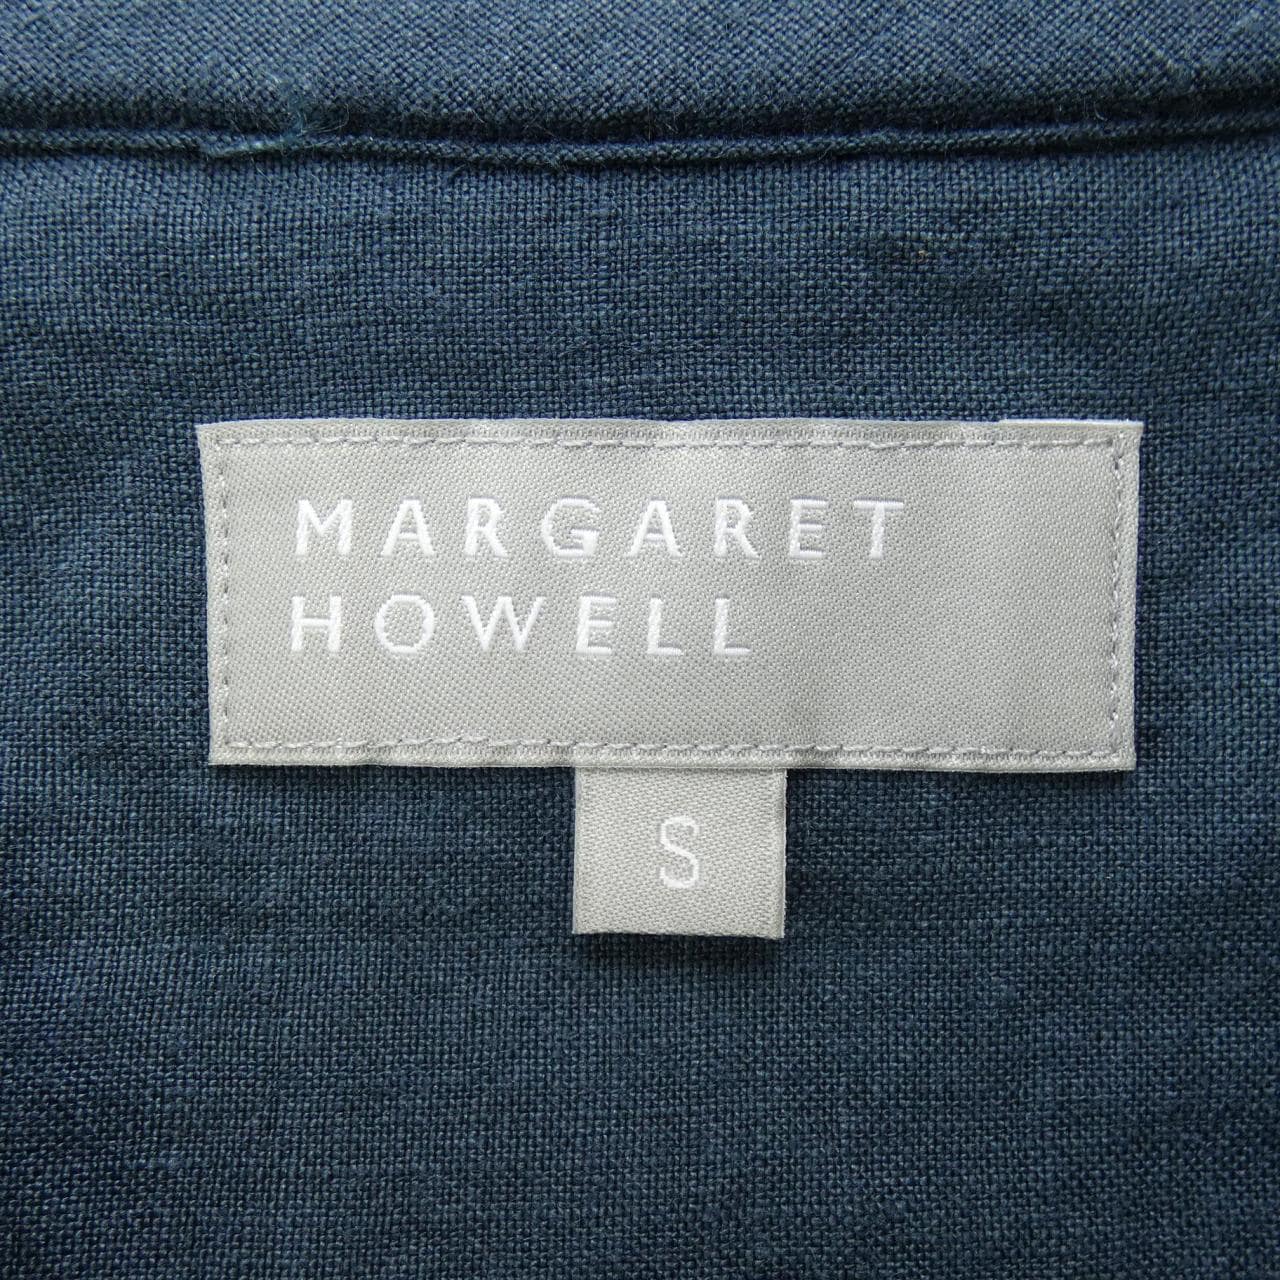 Margaret Howell S/S衬衫